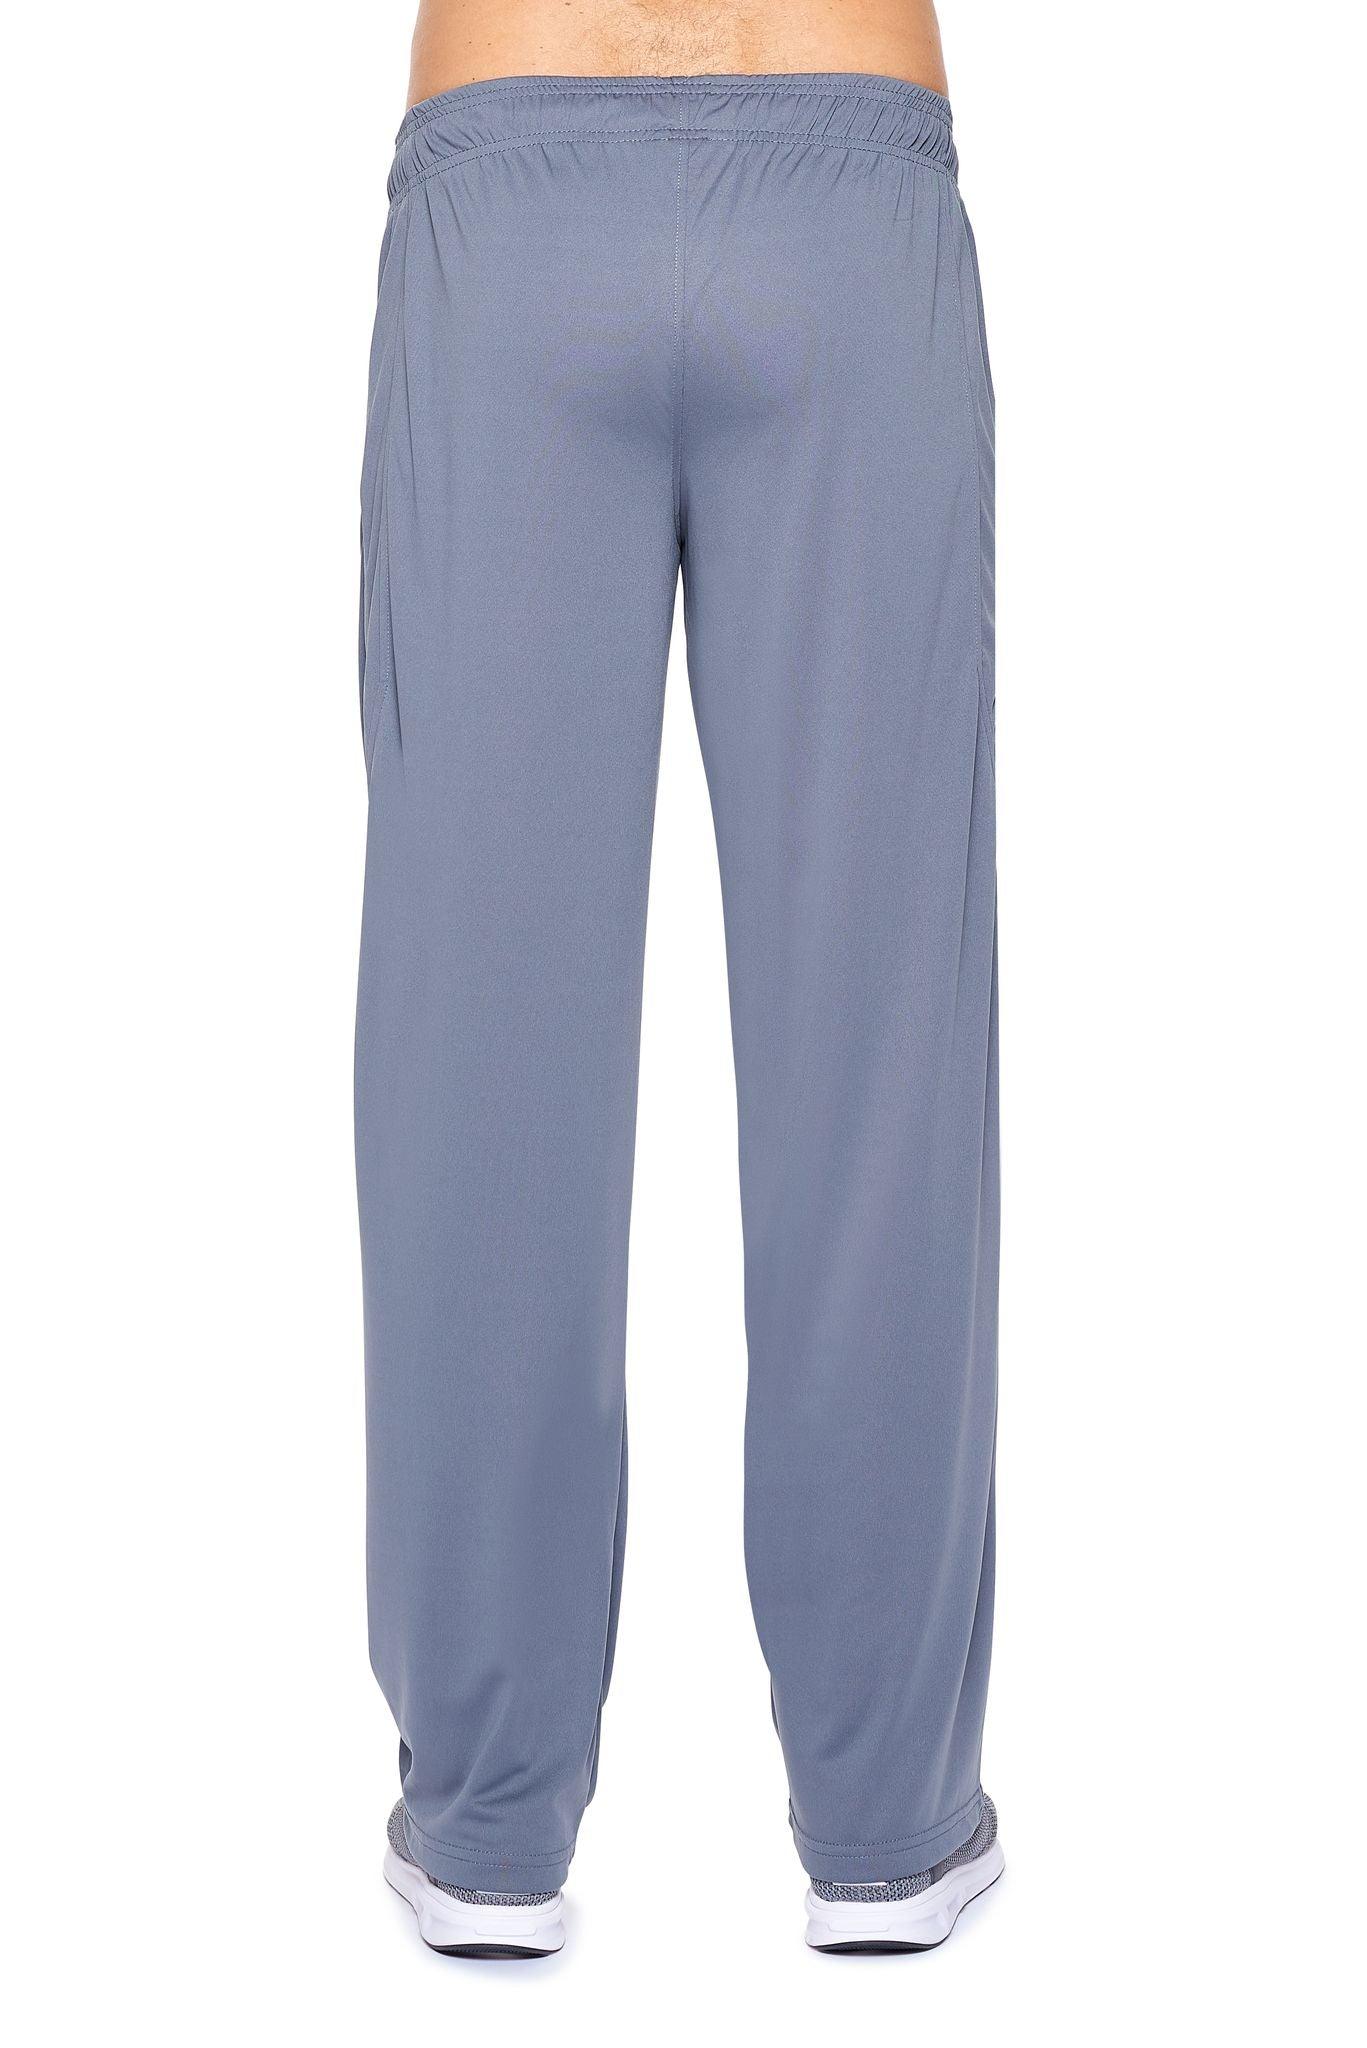 AI1095 DriMax™ Great Outdoor Pants - Expert Brand #STEEL